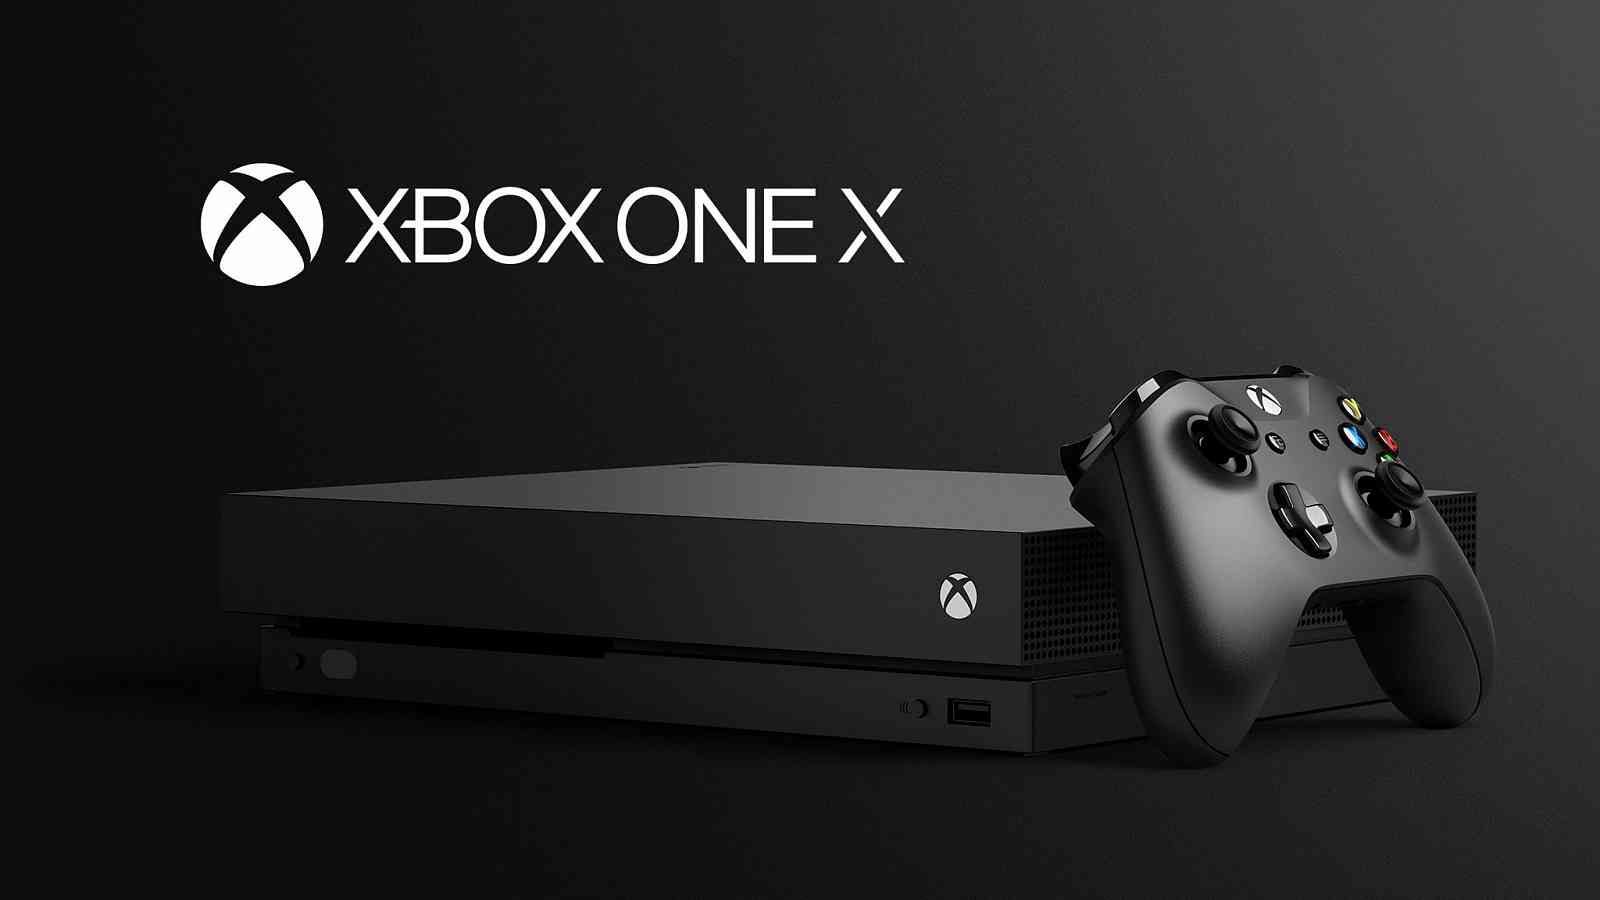 Srovnávací videa mezi hrami připomínají blížící se příchod Xbox One X